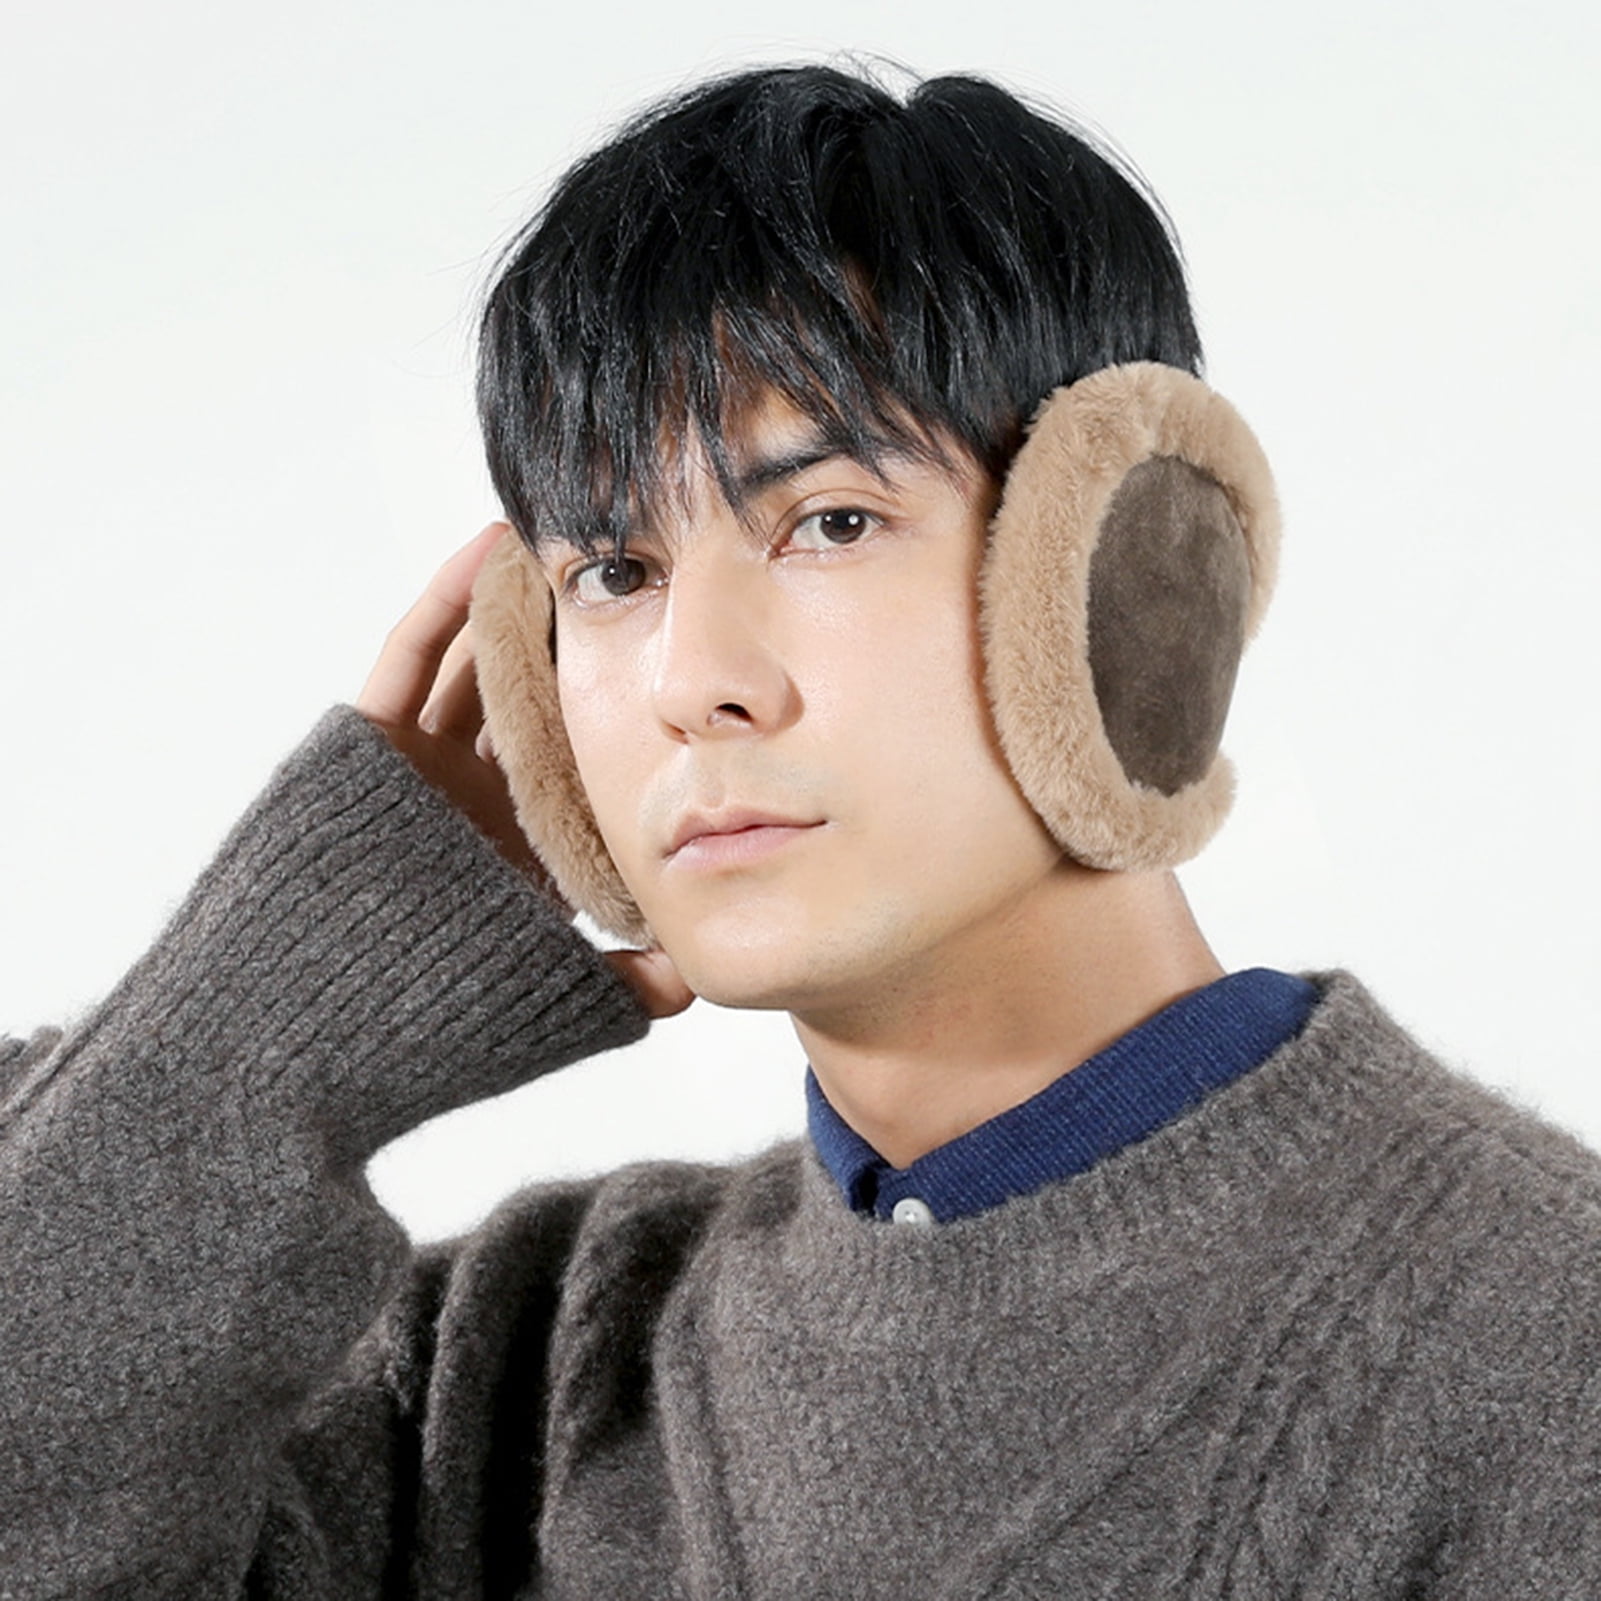 Buy Fleece Ear Muffs - Ear Warmers - Behind the Head Style Earmuffs for Men  Women at